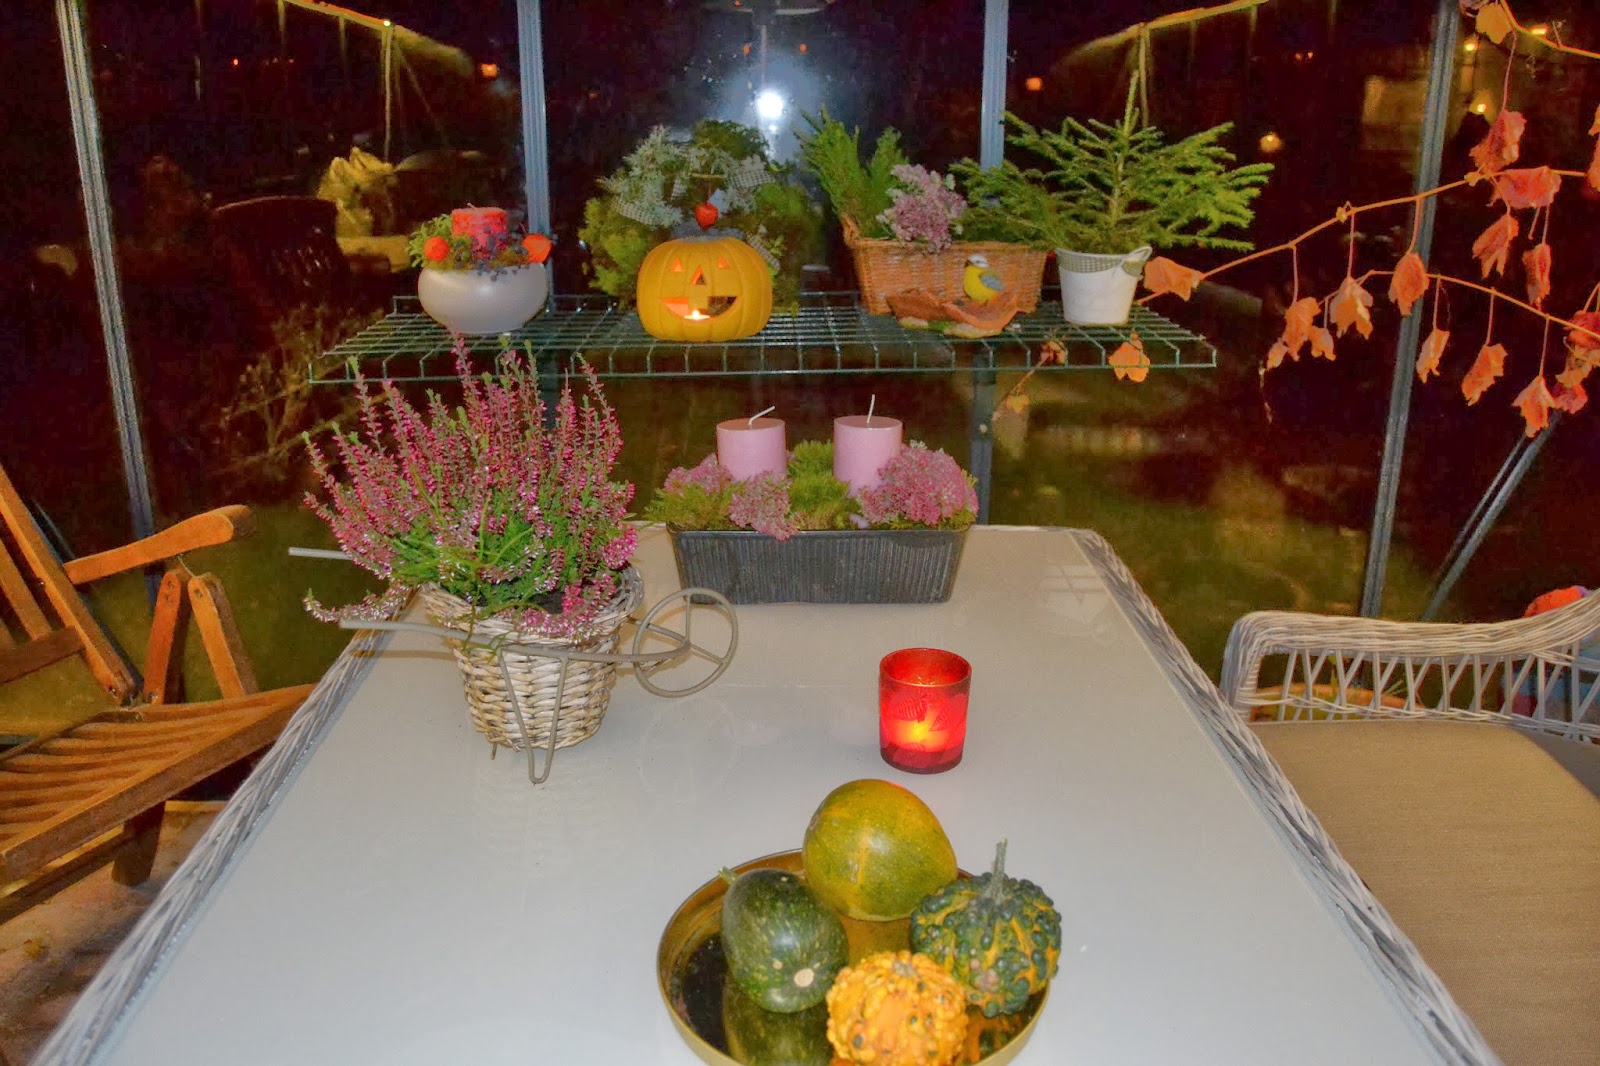 Ilta kasvarissa – Evening in the greenhouse